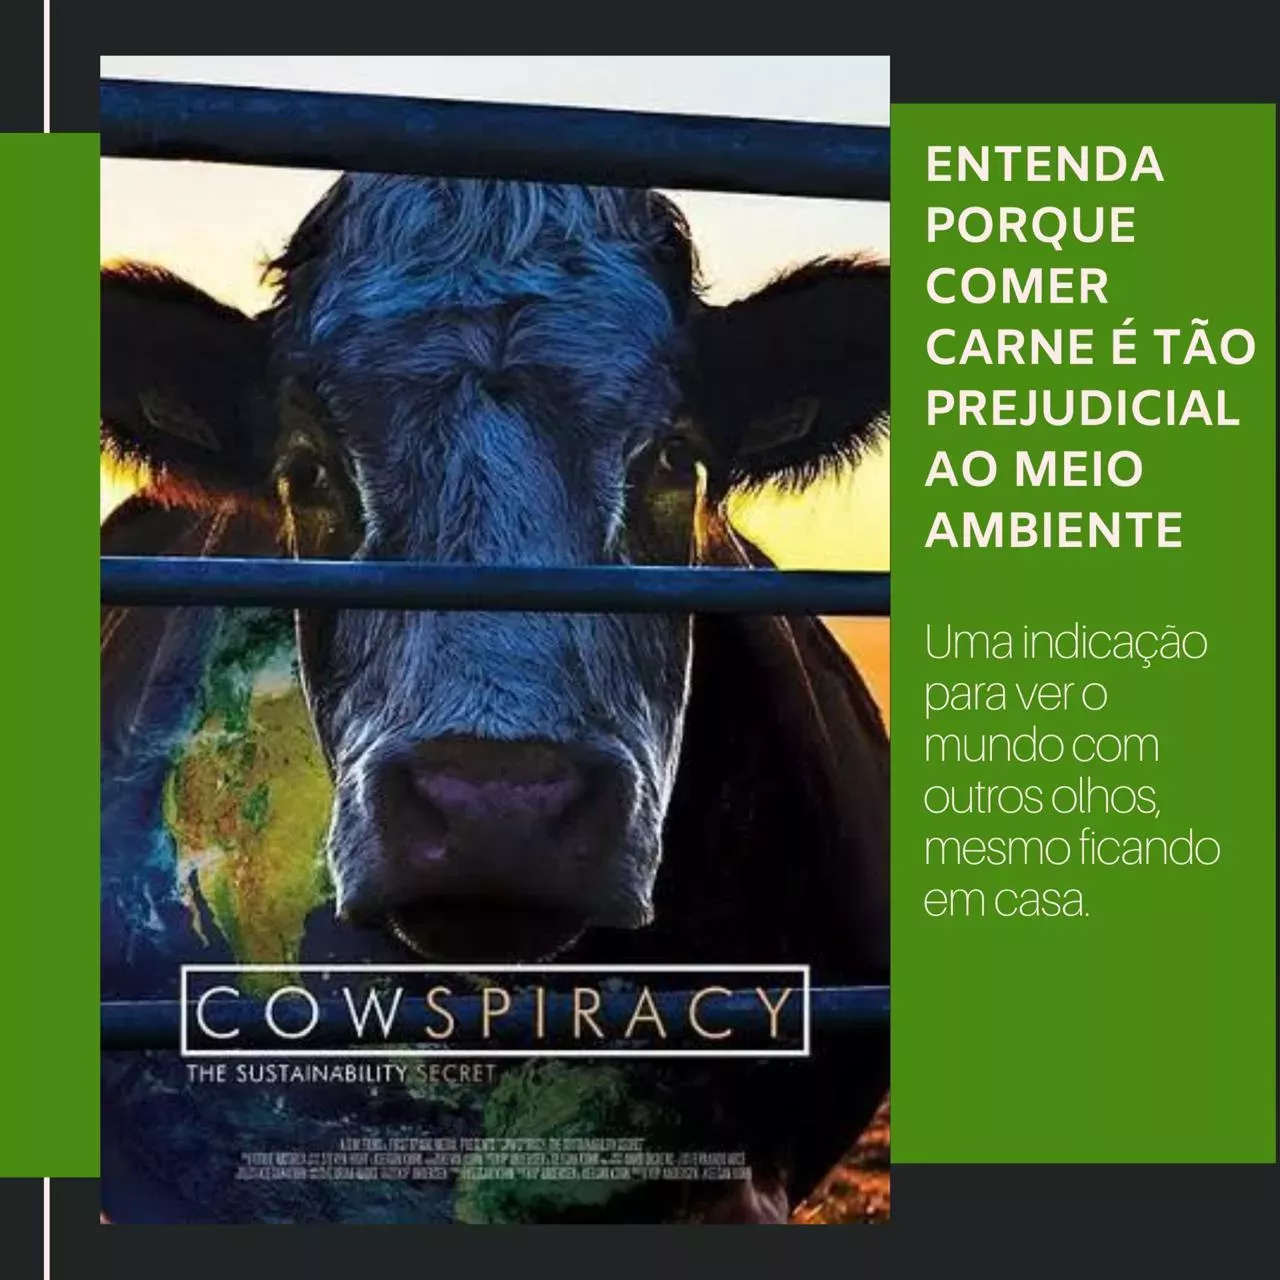 Cowspiracy: entenda por que comer carne é tão prejudicial ao meio ambiente